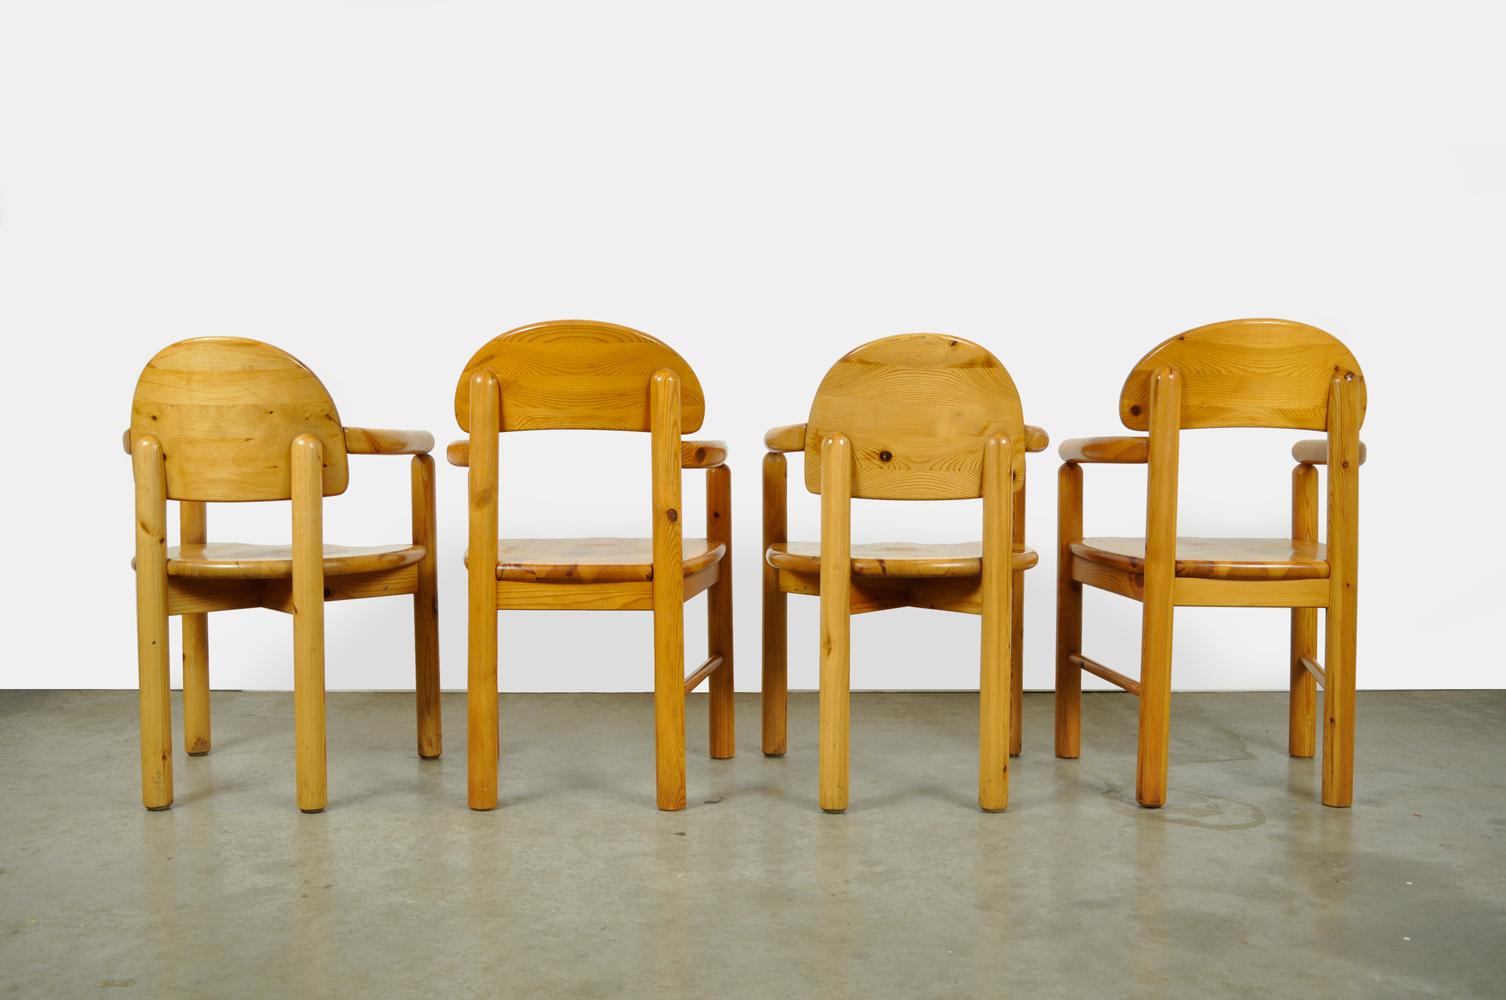 2×2 Stühle aus Kiefernholz, entworfen von dem Schweden Rainer Daumiller und hergestellt von der Sägemühle Hirtshals, Dänemark 1970. Skulpturale Stühle aus massivem Kiefernholz mit charakteristischem rundem Design. Das Set besteht aus zwei